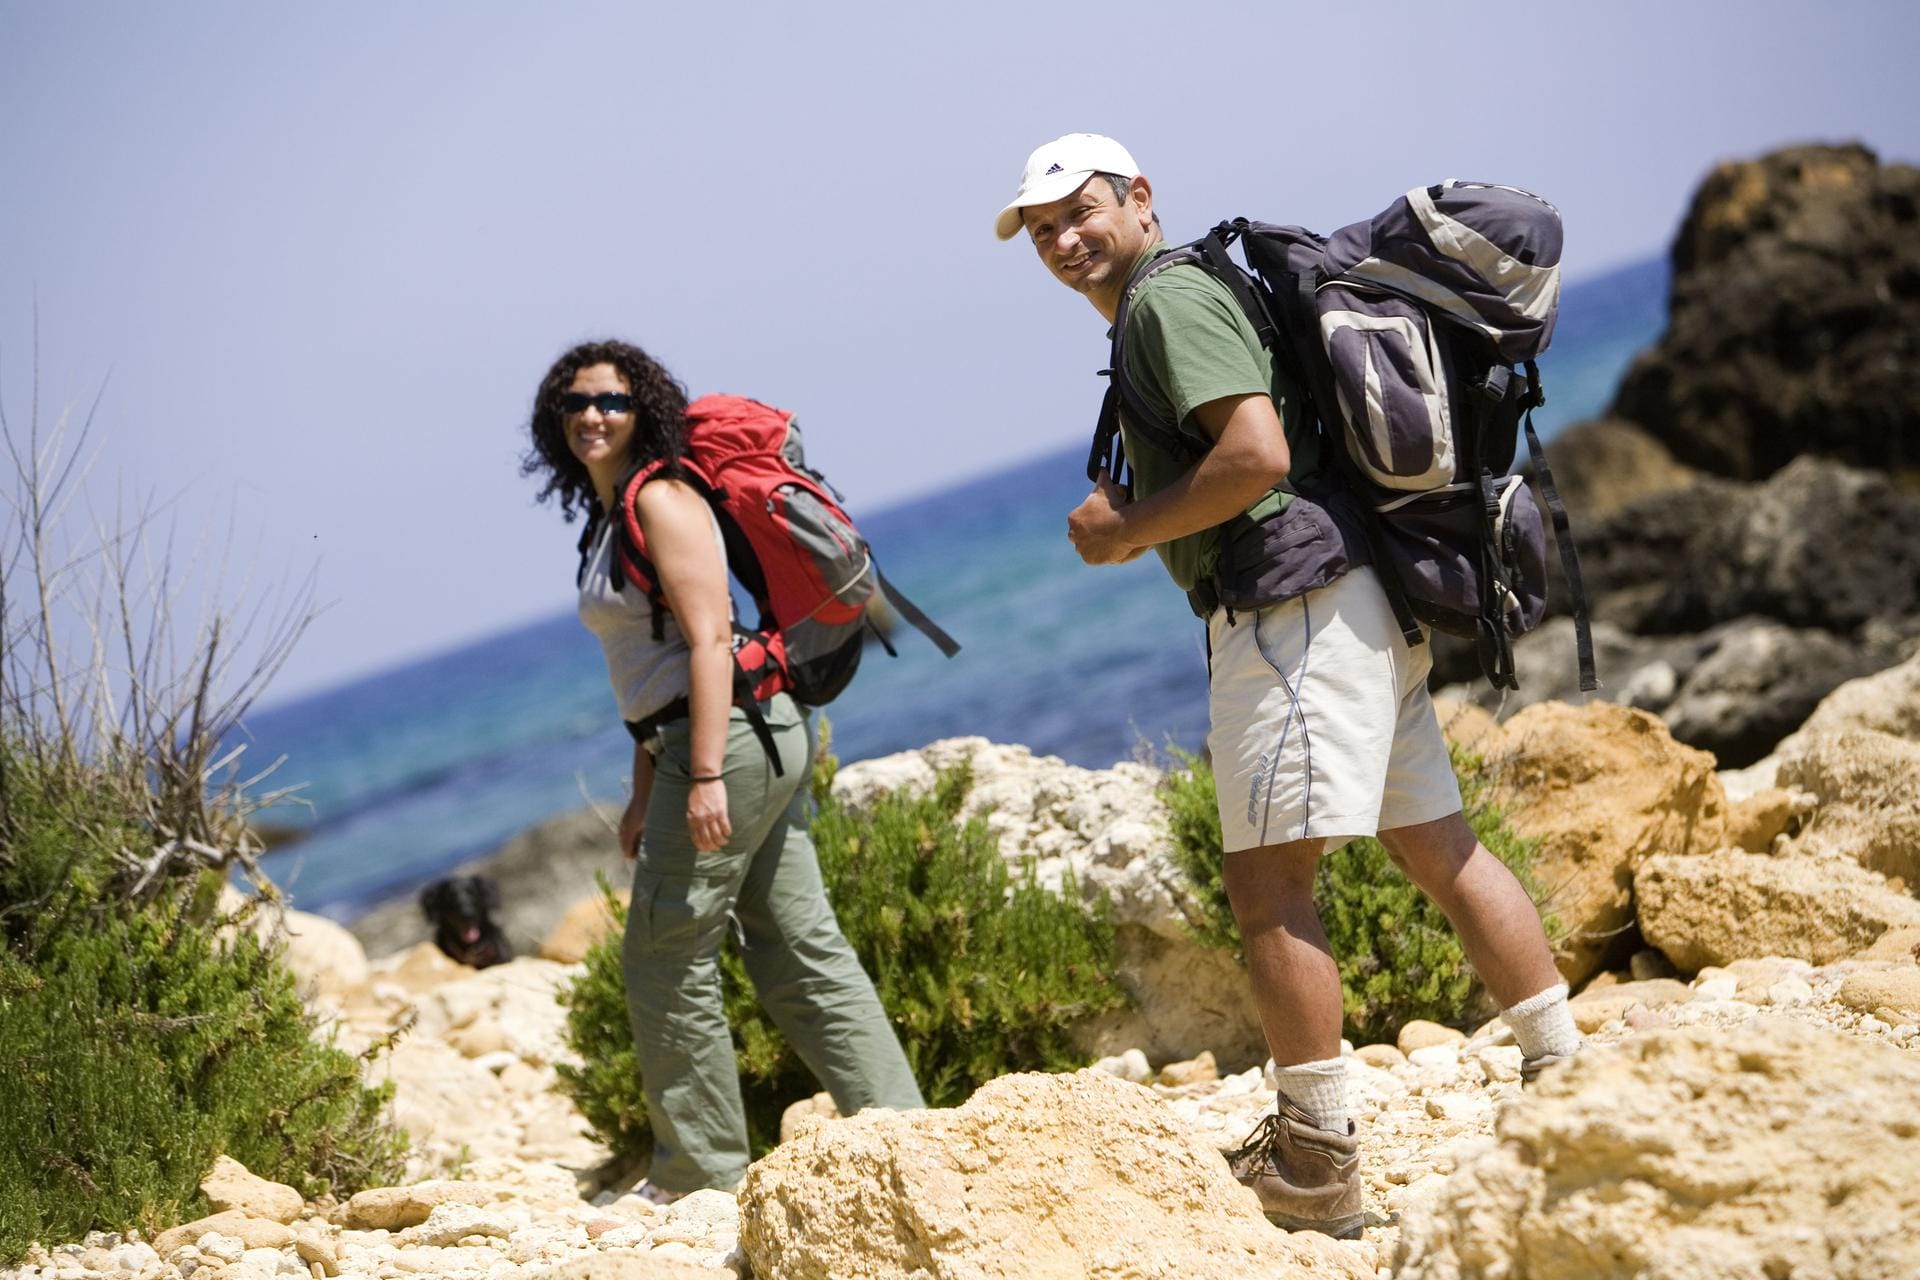 Malta ist das perfekte Reiseziel für Trekking Touren: Hier streifen Sie durch romantische Landschaften und Dörfer.